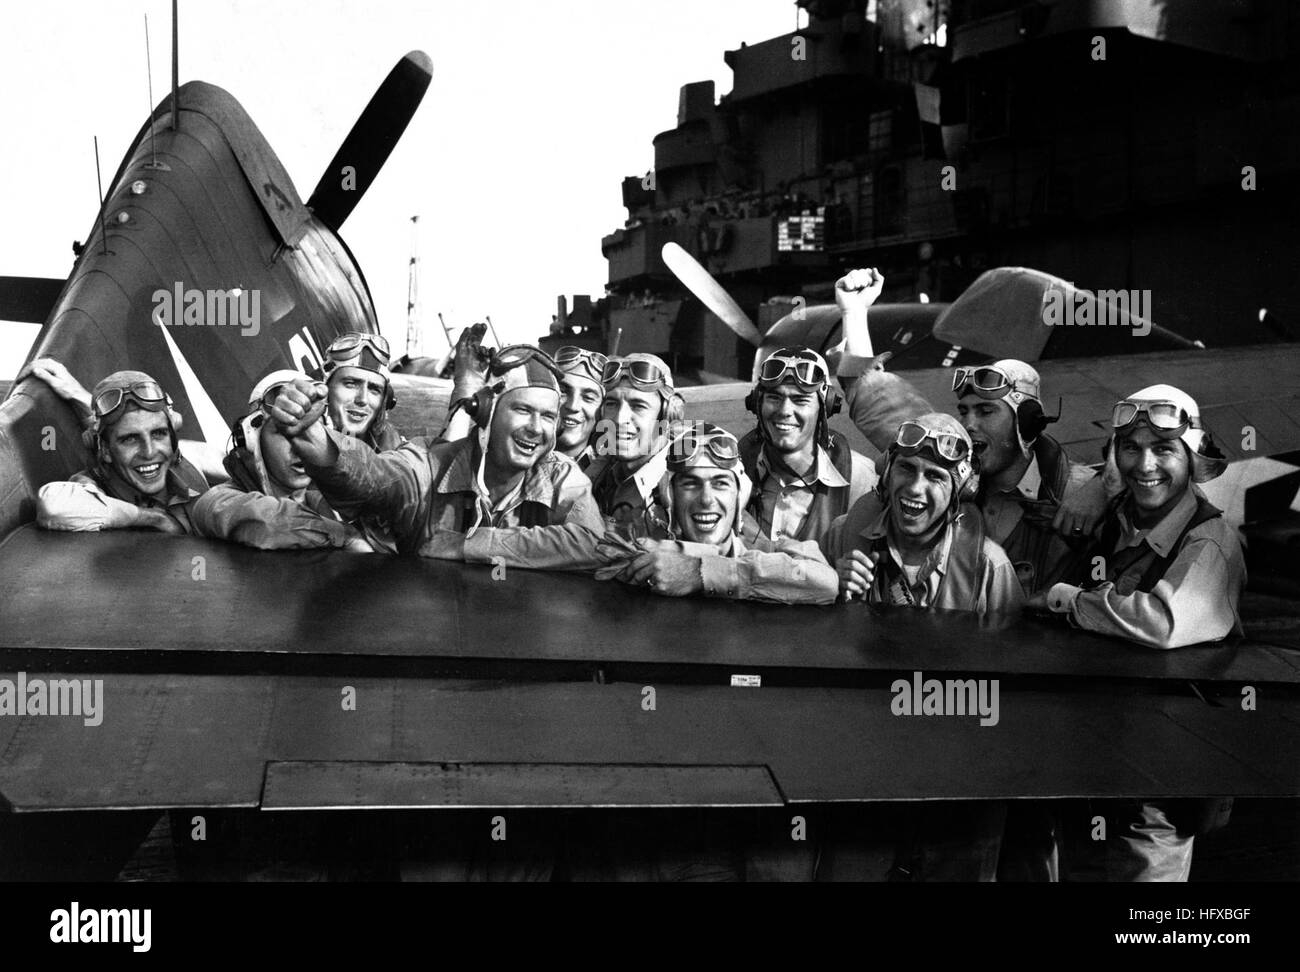 Piloten zufrieden über ihren Sieg während des Angriffs der Marshall-Inseln, Grinsen über das Heck des eine F6F Hellcat an Bord der USS LEXINGTON nach Abschuss 17 von 20 japanische Flugzeuge in Richtung Tarawa.  November 1943.  Einer Steichen.  (Marine) Genaue Datum erschossen unbekannte NARA Datei #: 080-G-470985 & Konflikt Krieg Buch #: 959 USS Lexington (CV-16) Piloten feiern Luftsiege 1943-11 Stockfoto